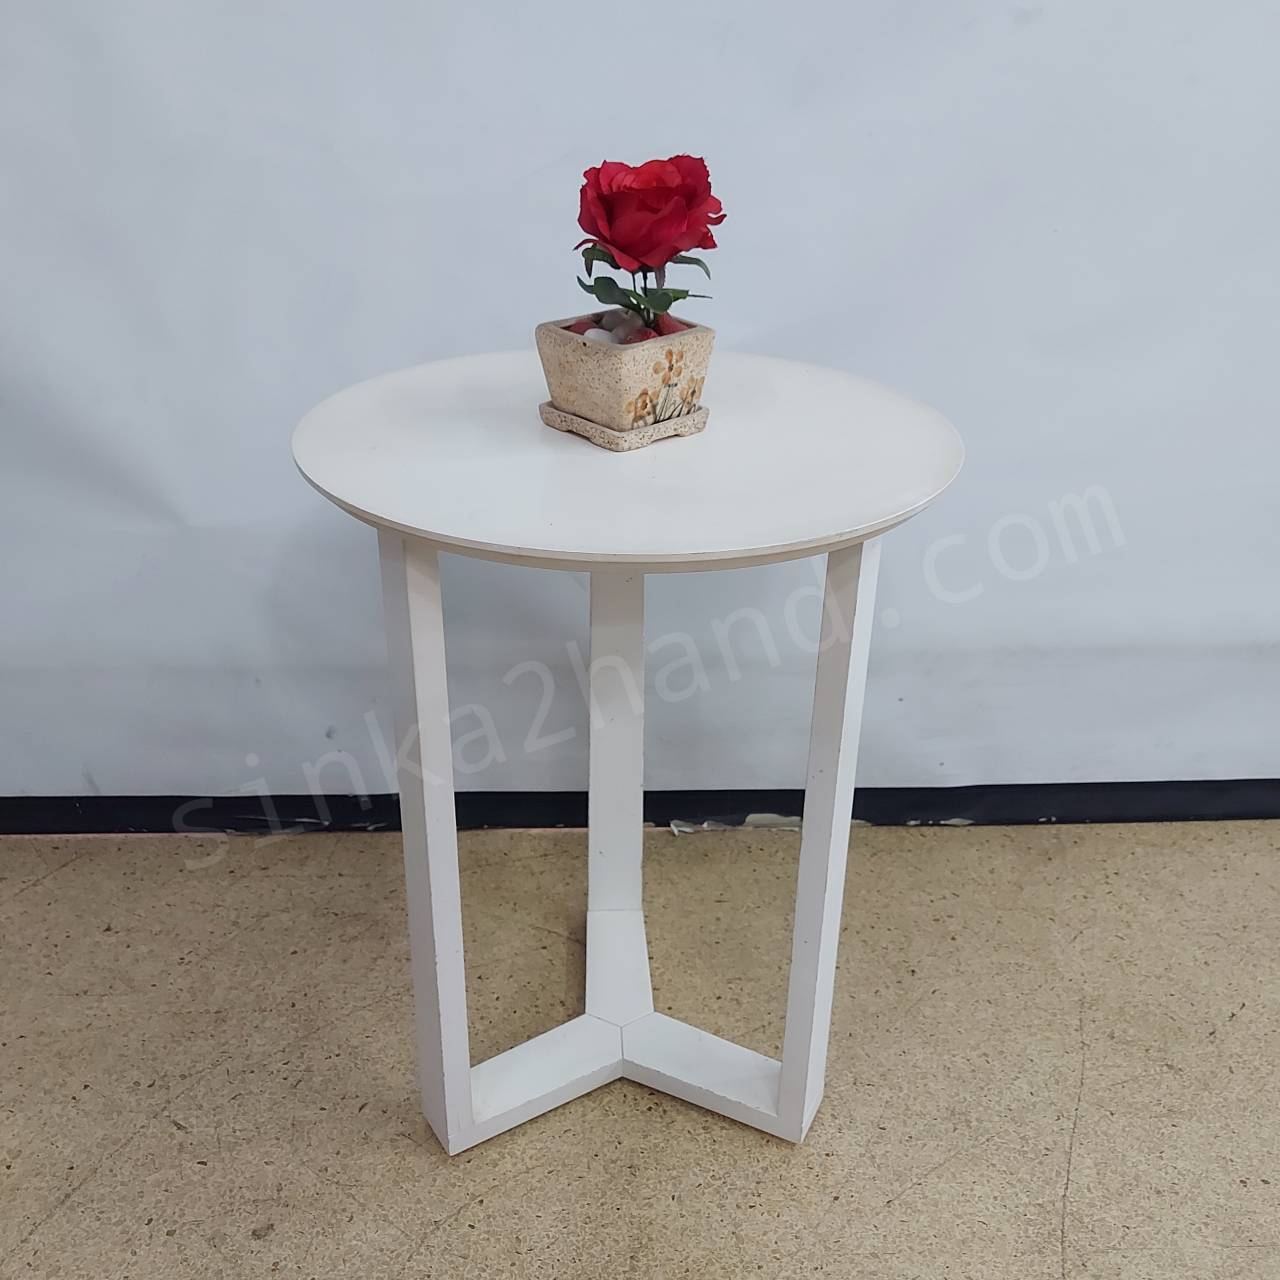  โต๊ะวางของไม้ทรงกลมสีขาว